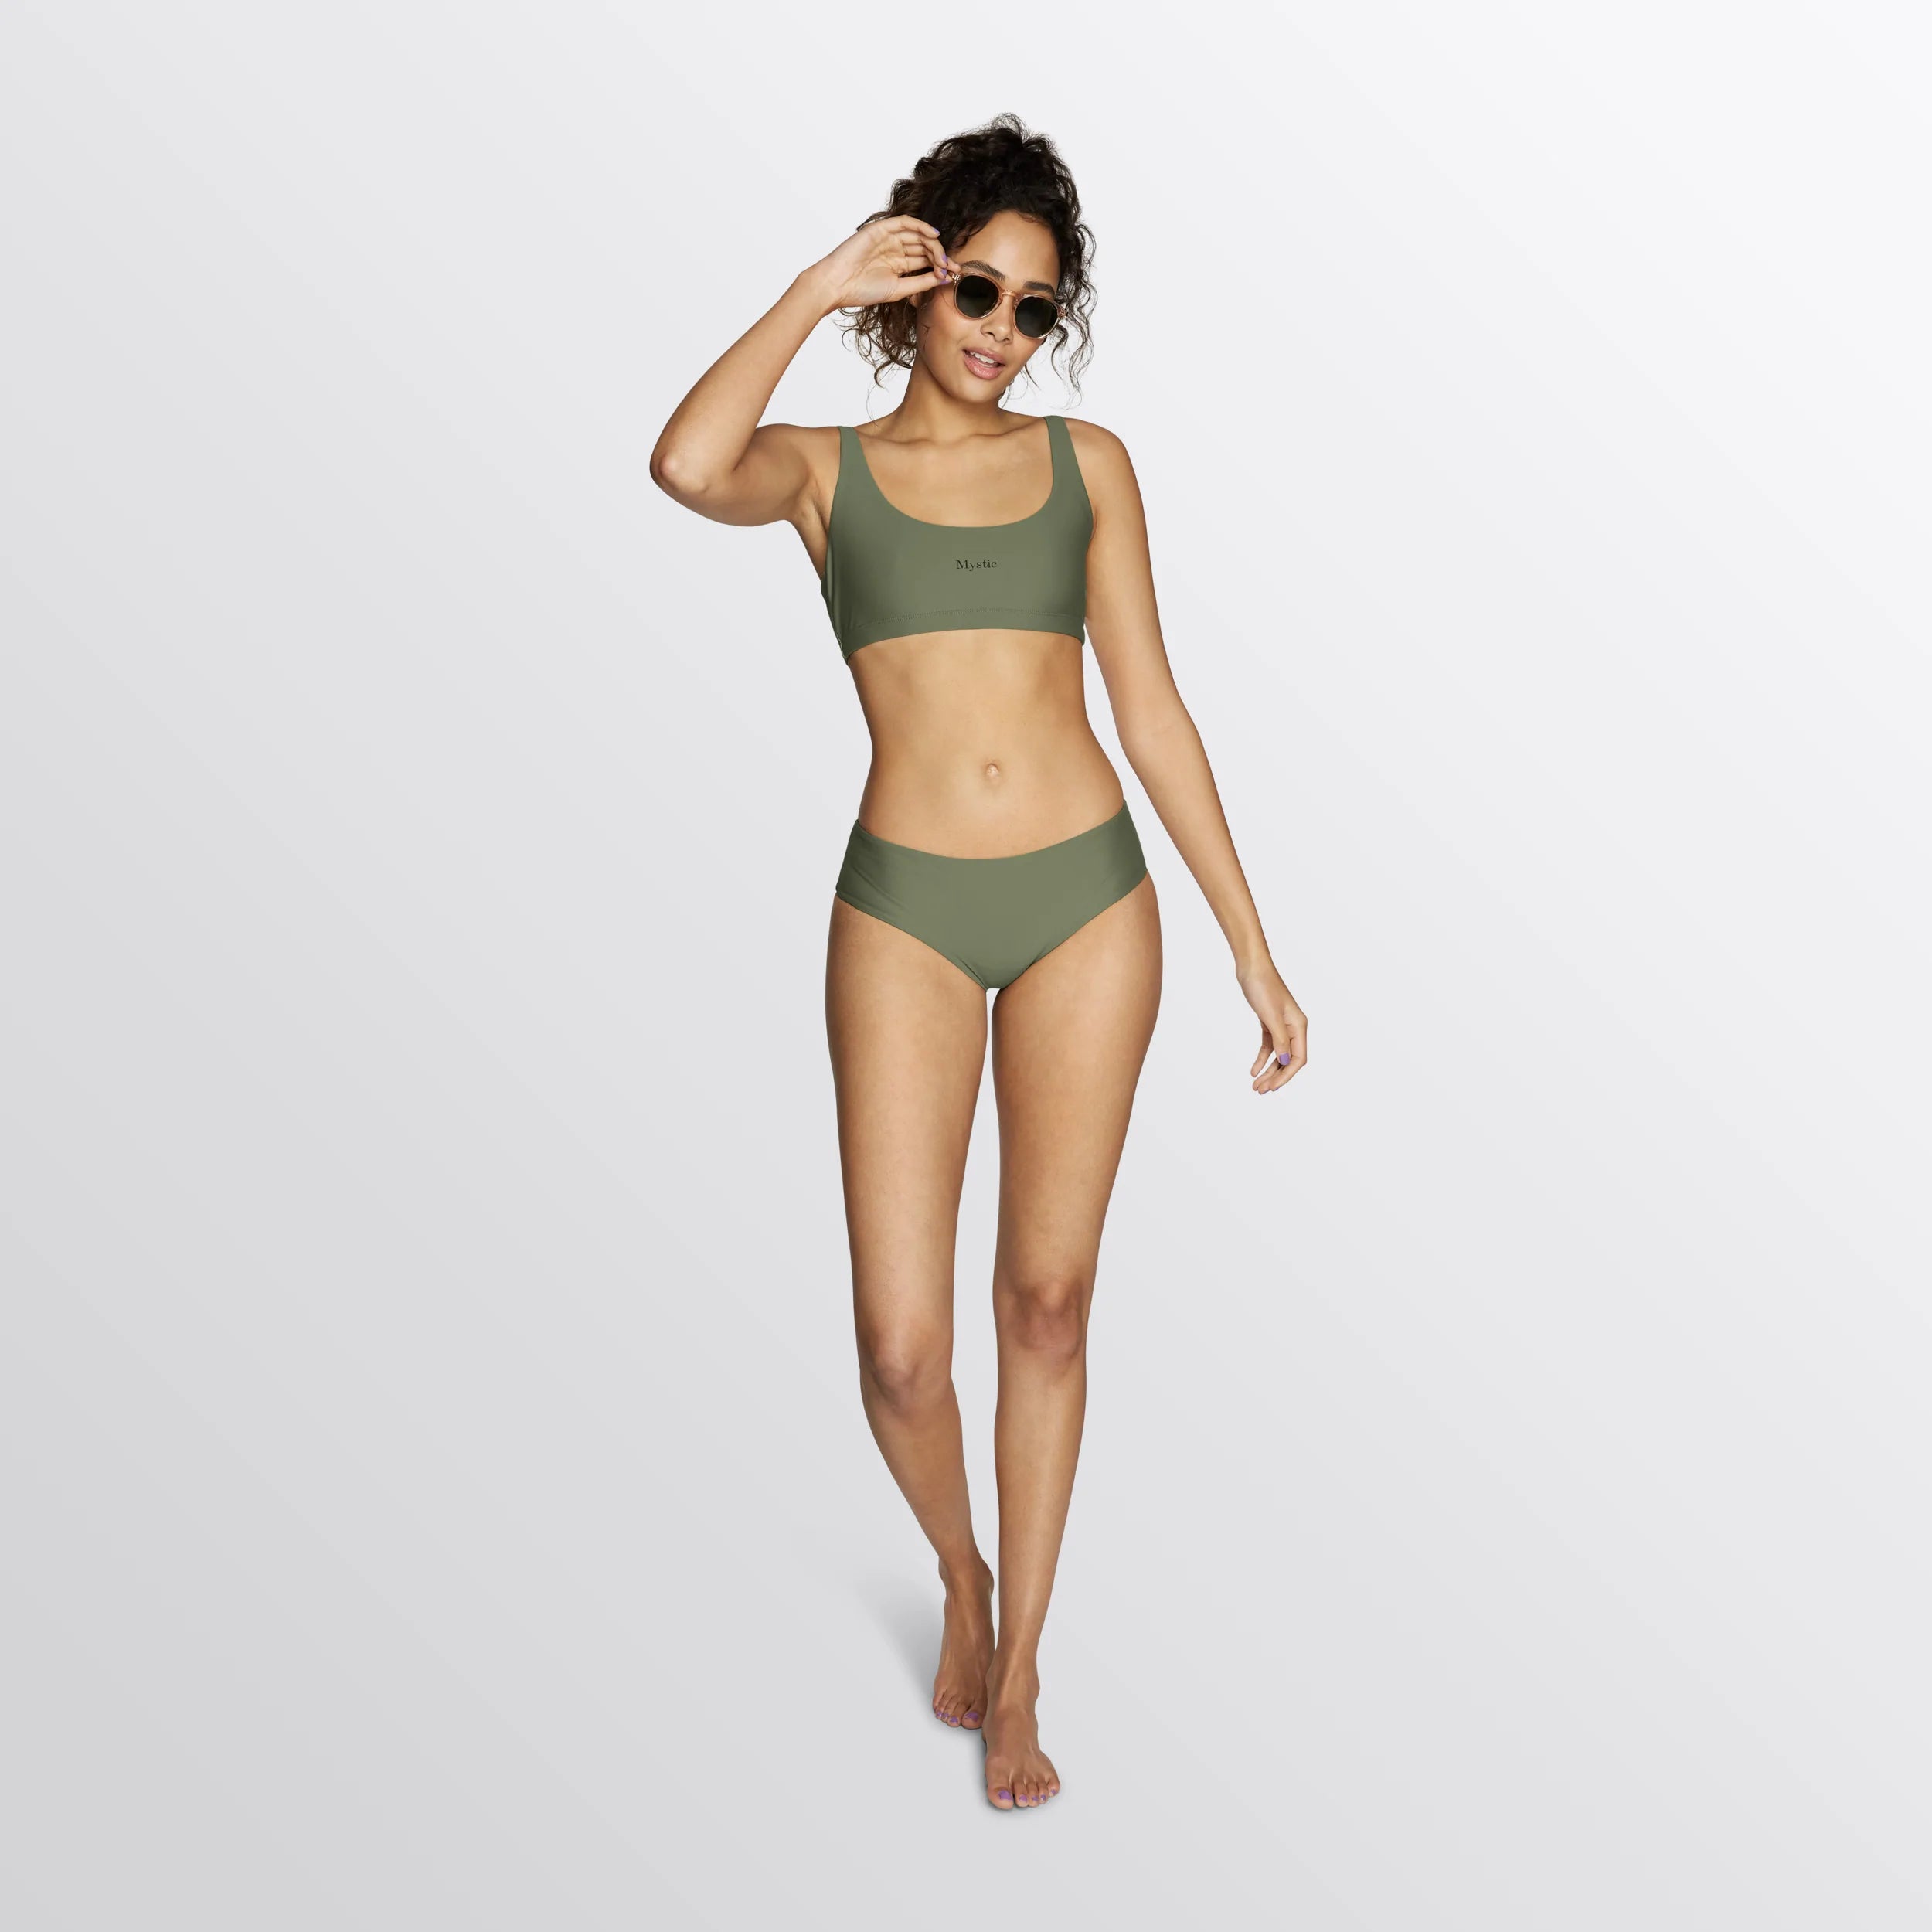 Mystic Ease Bikini Bottom, Olive Green 2022